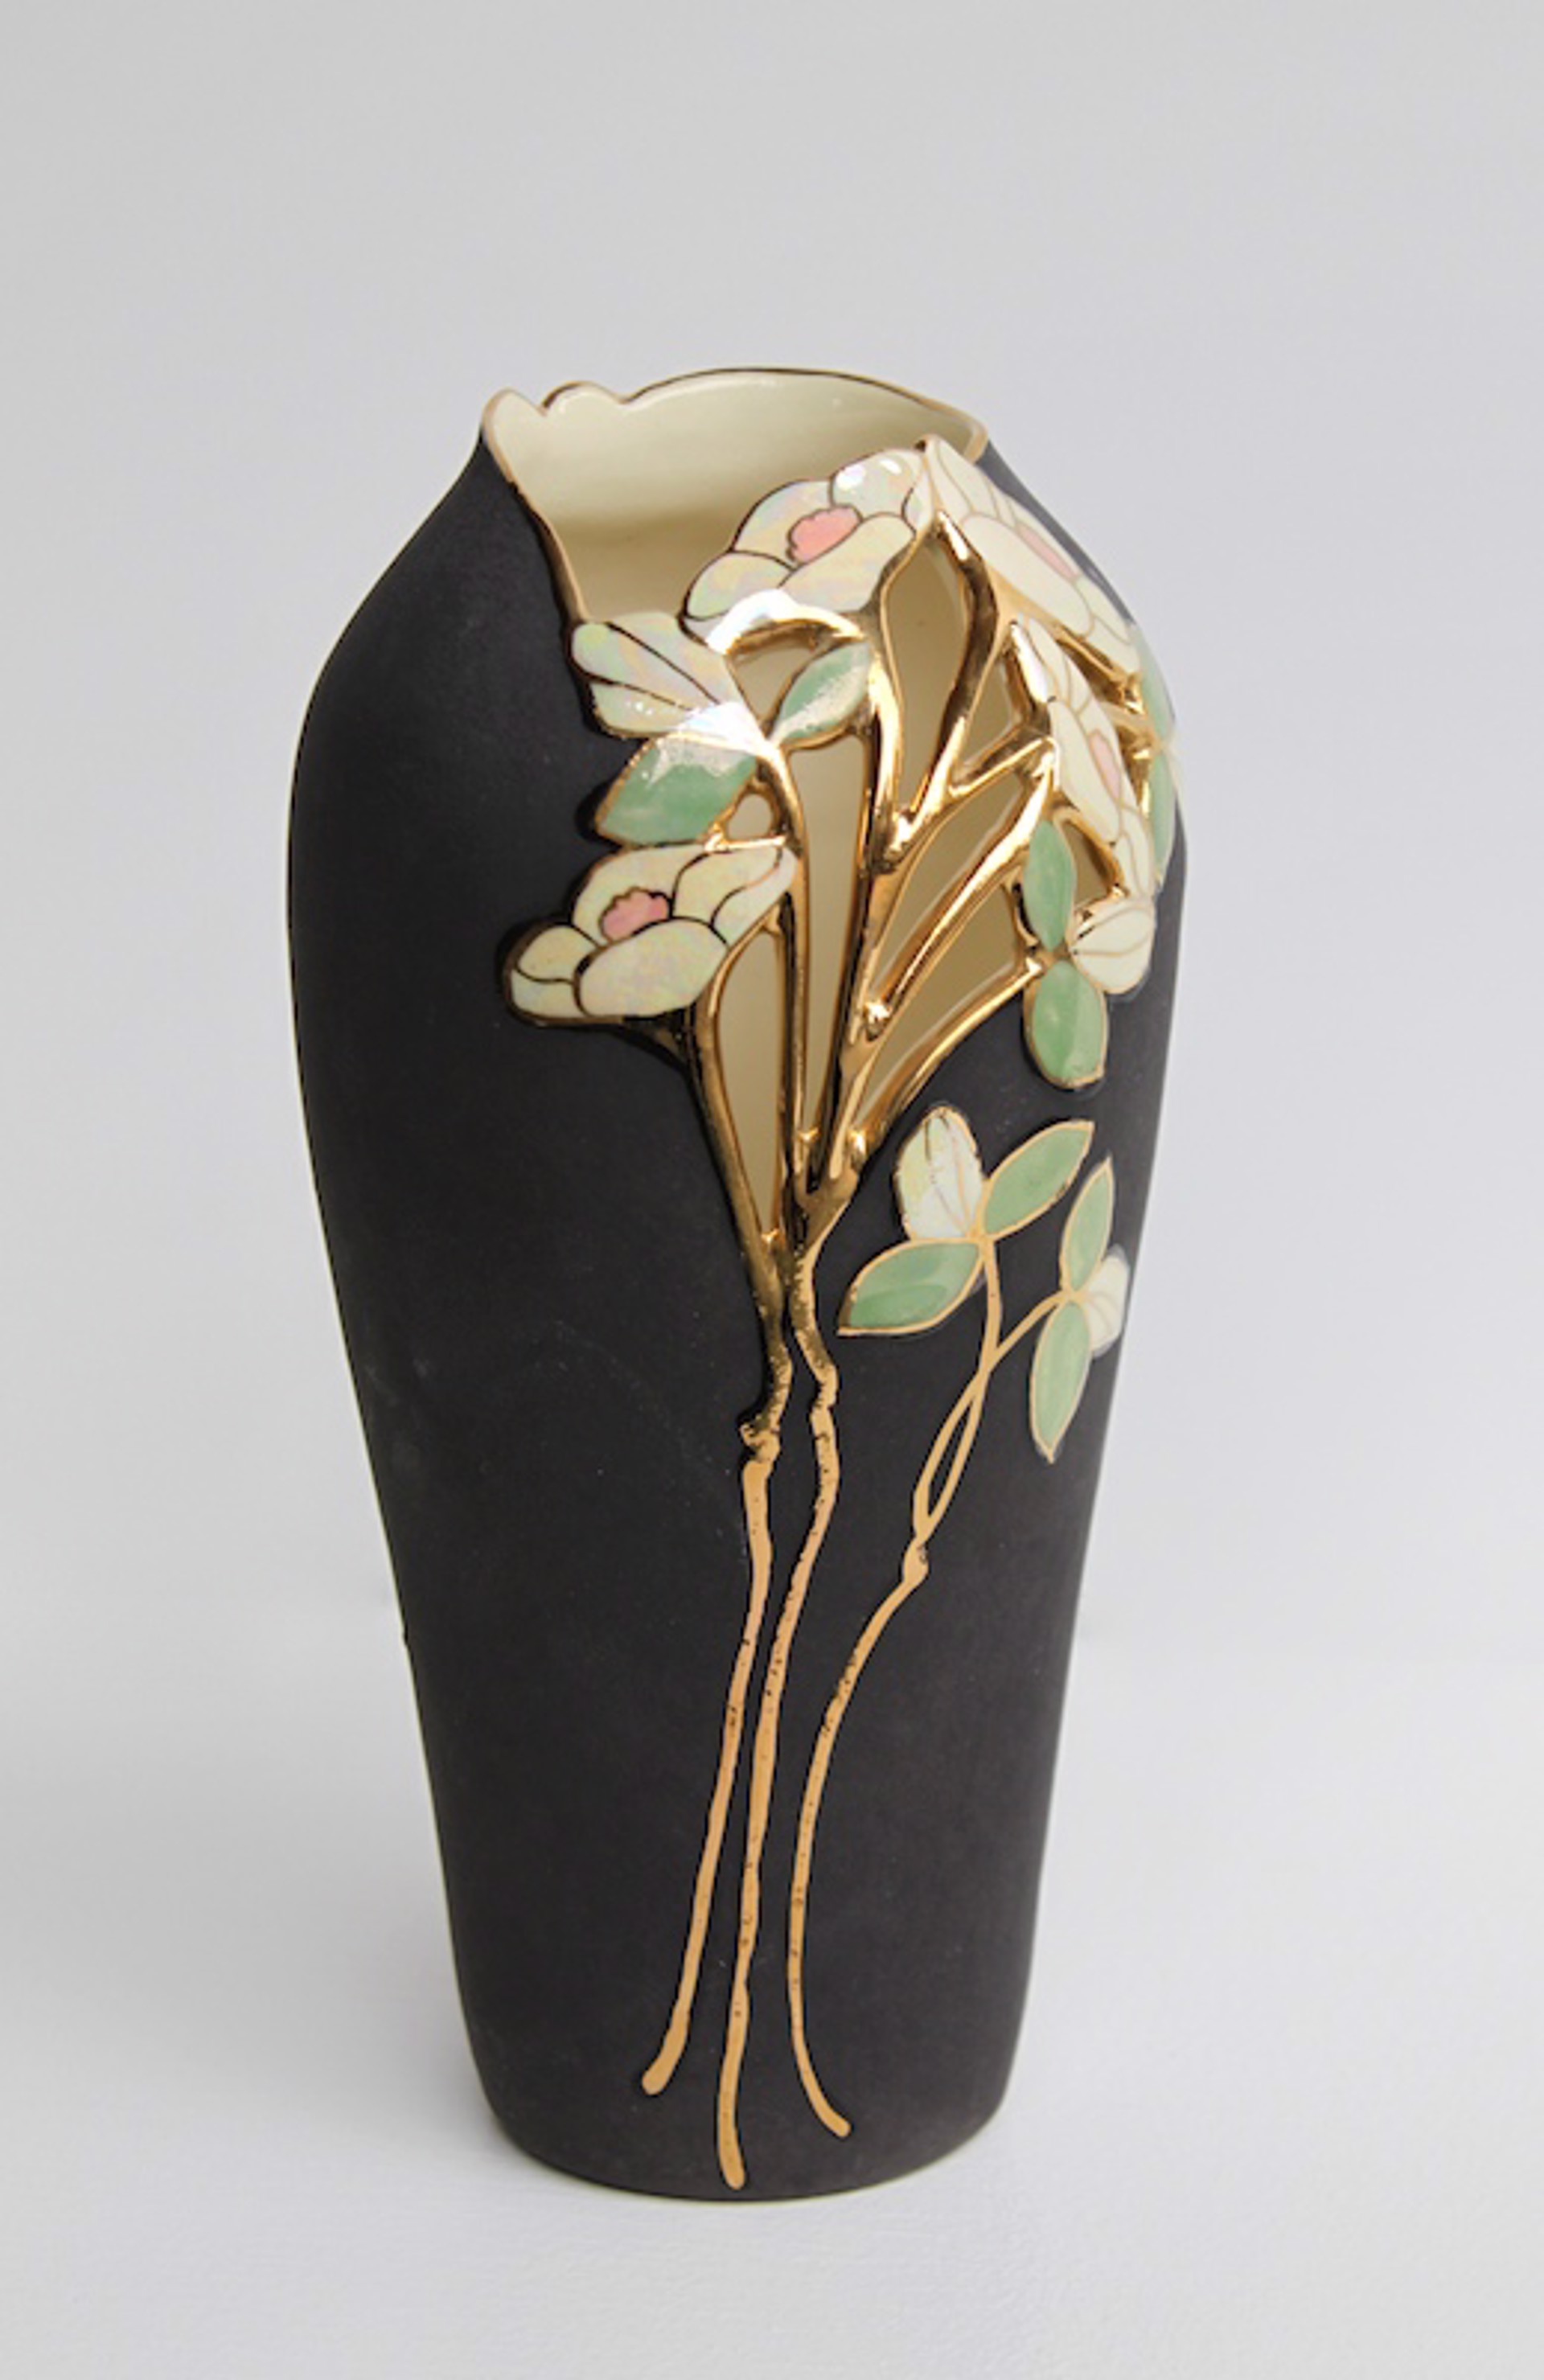 Vase - Small Oval Top - Matte black by Jan Phelan